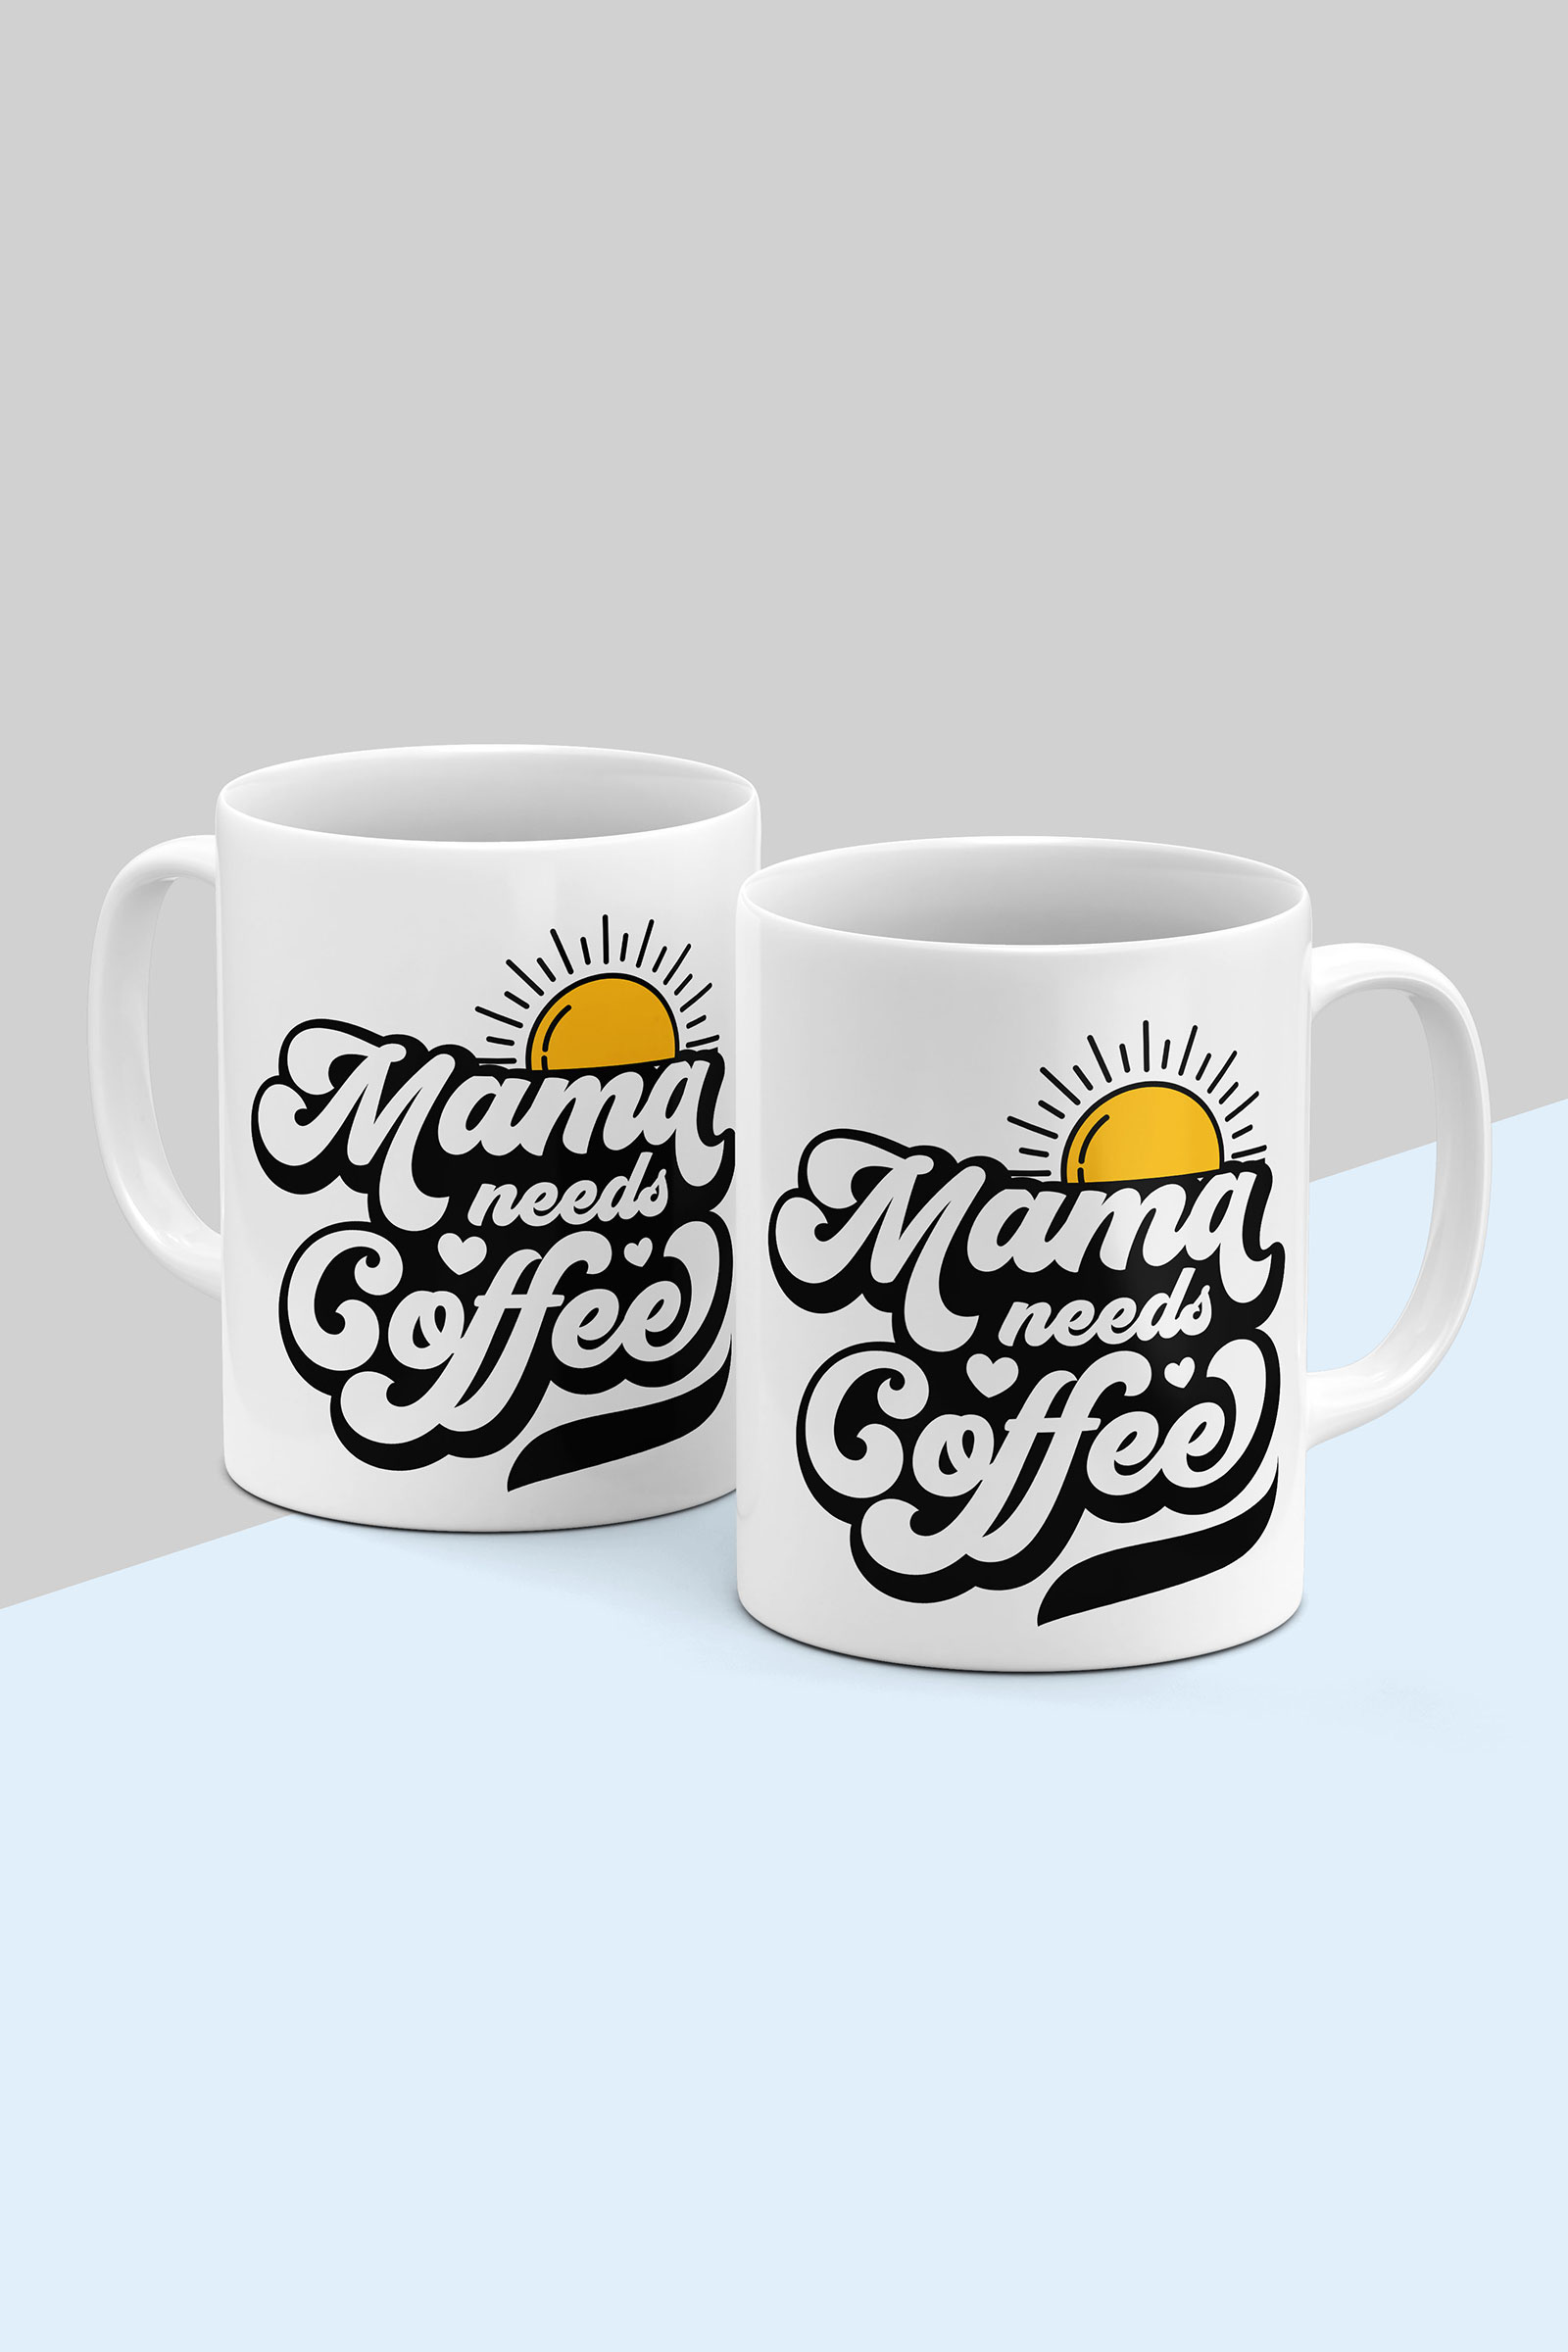 Mamma Needs coffee mug